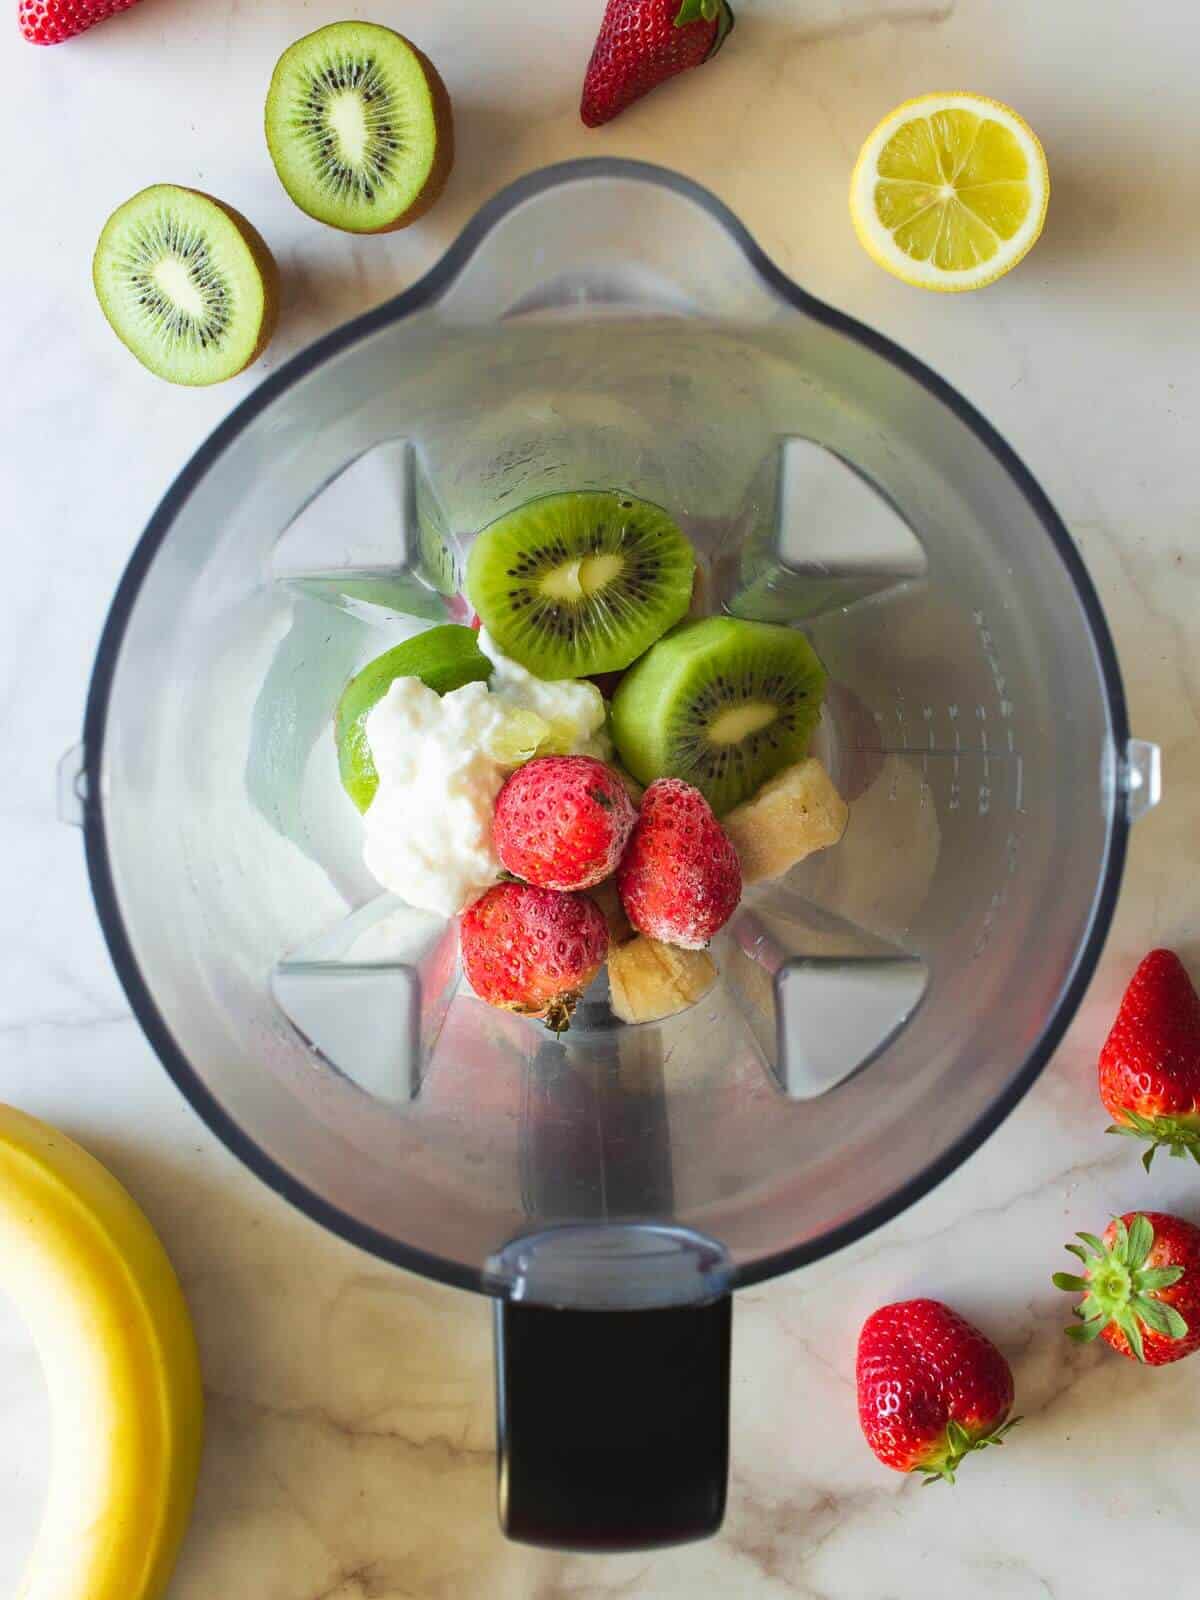 strawberry kiwi banana smoothie ingredients in blender